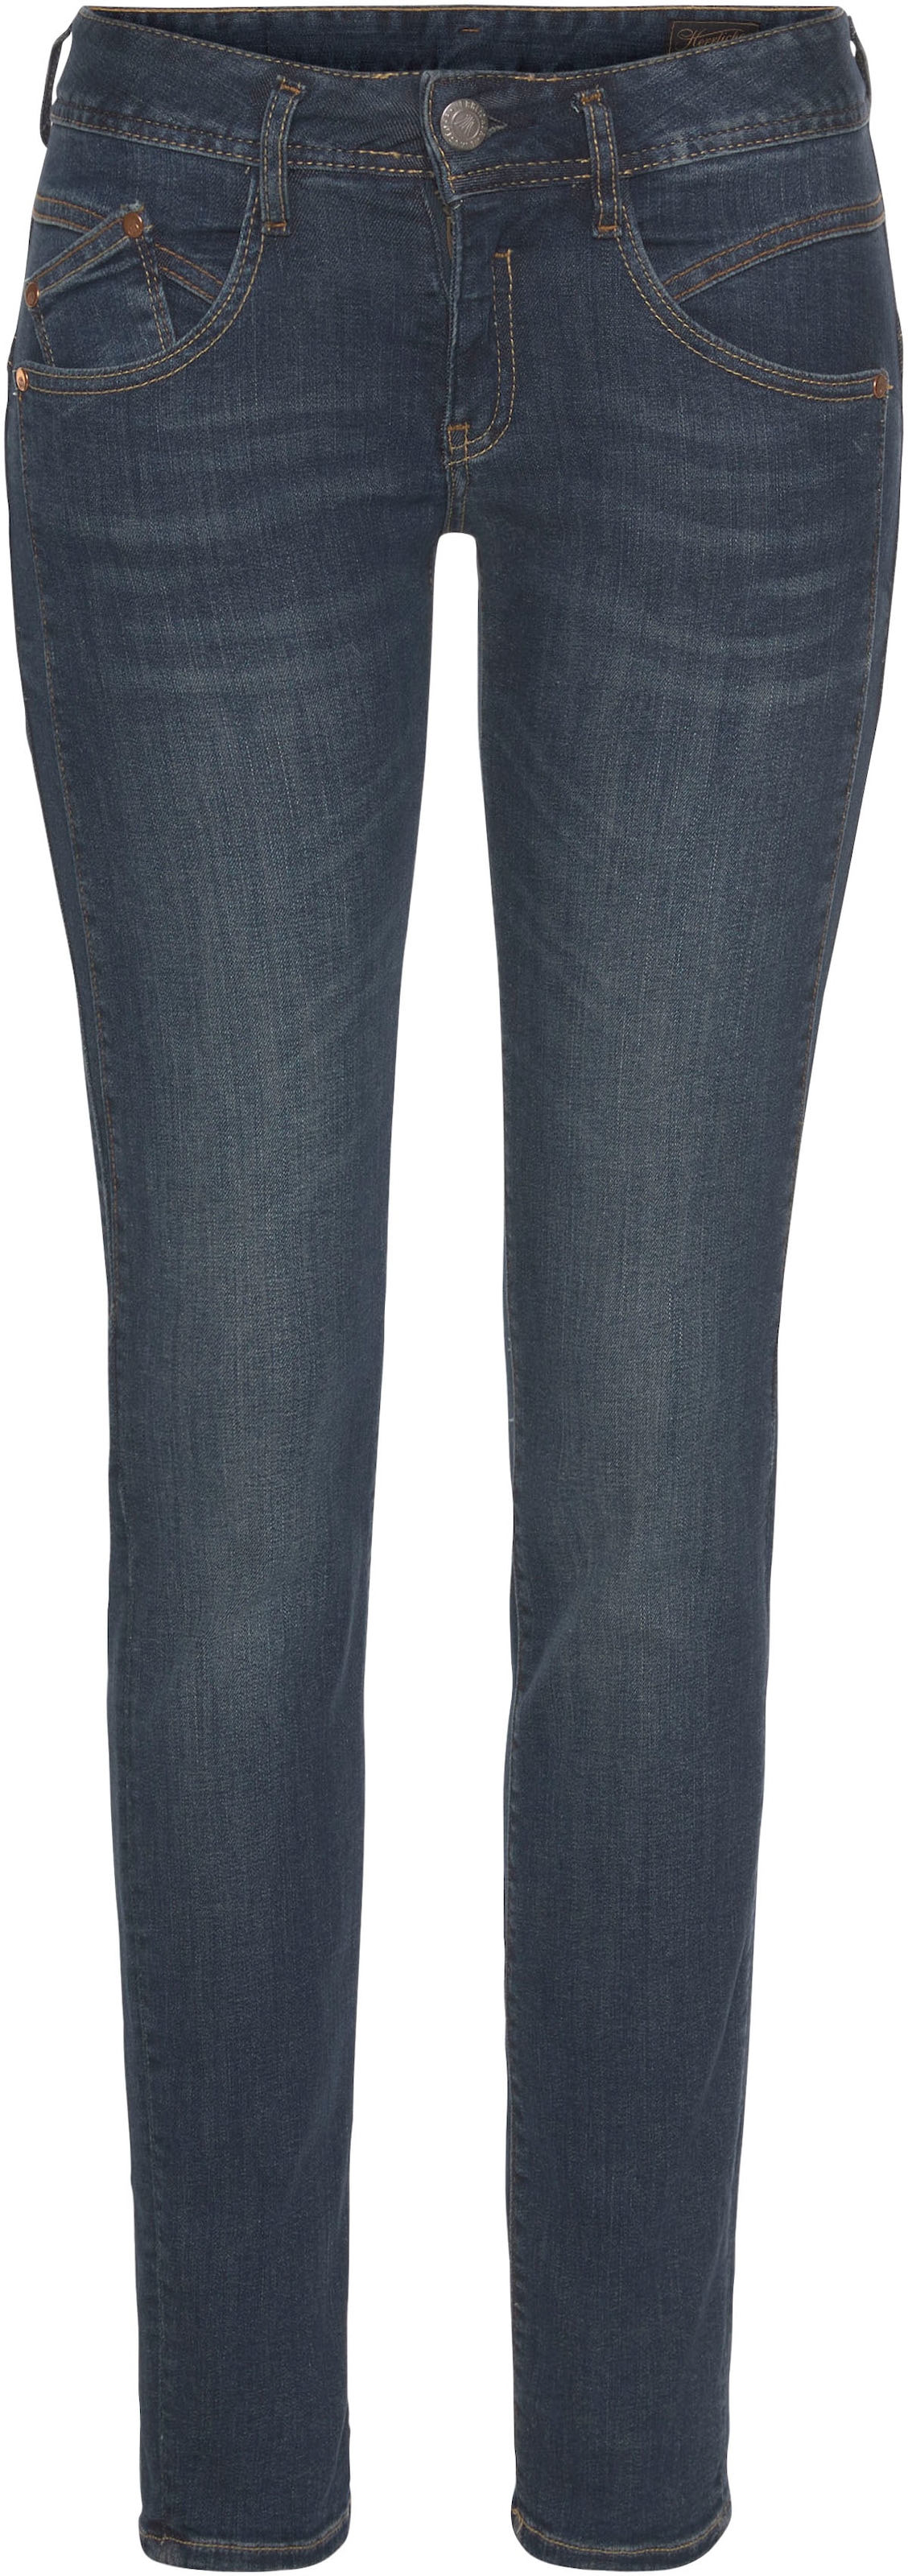 Herrlicher Slim-fit-Jeans »GINA Keileinsatz walking seitlichem | RECYCLED DENIM«, I\'m mit kaufen